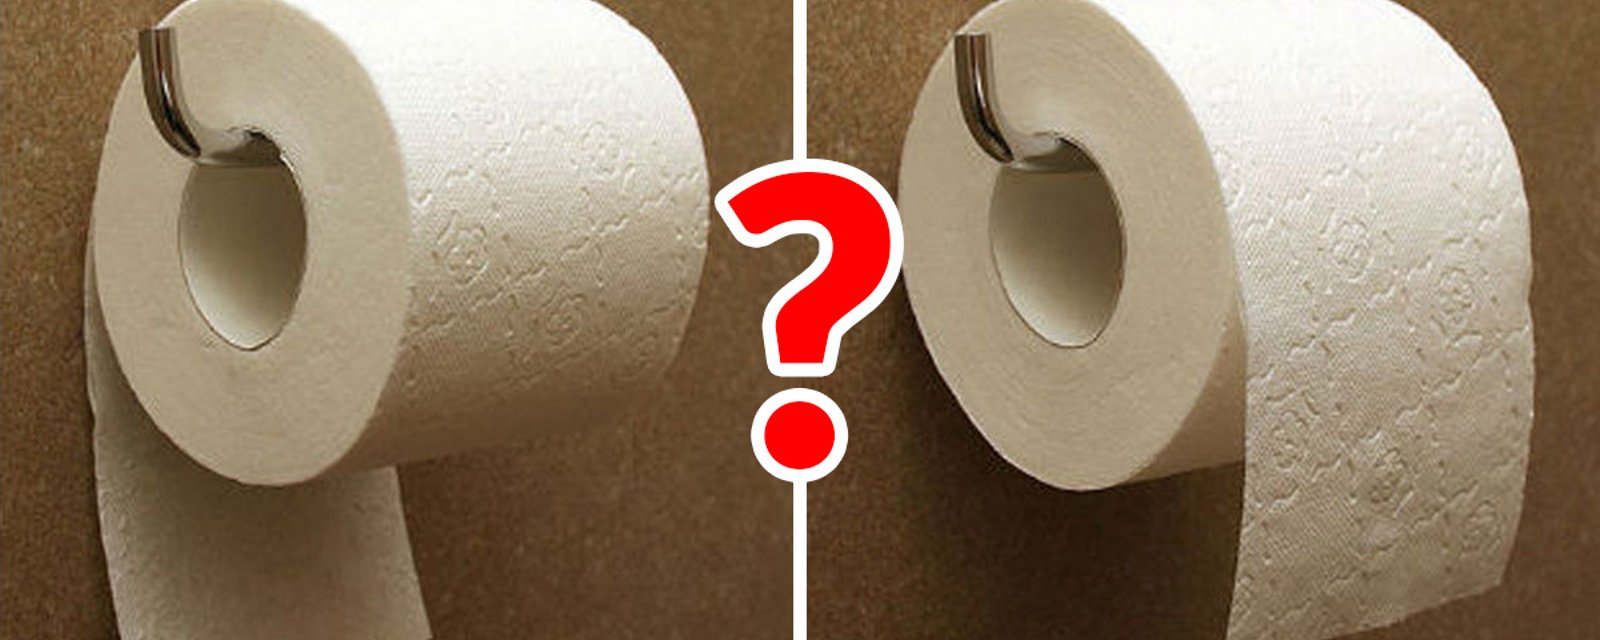 Faut-il placer le rouleau de papier de toilette feuilles par-dessus ou sur le dessous? La réponse date de 128 ans!